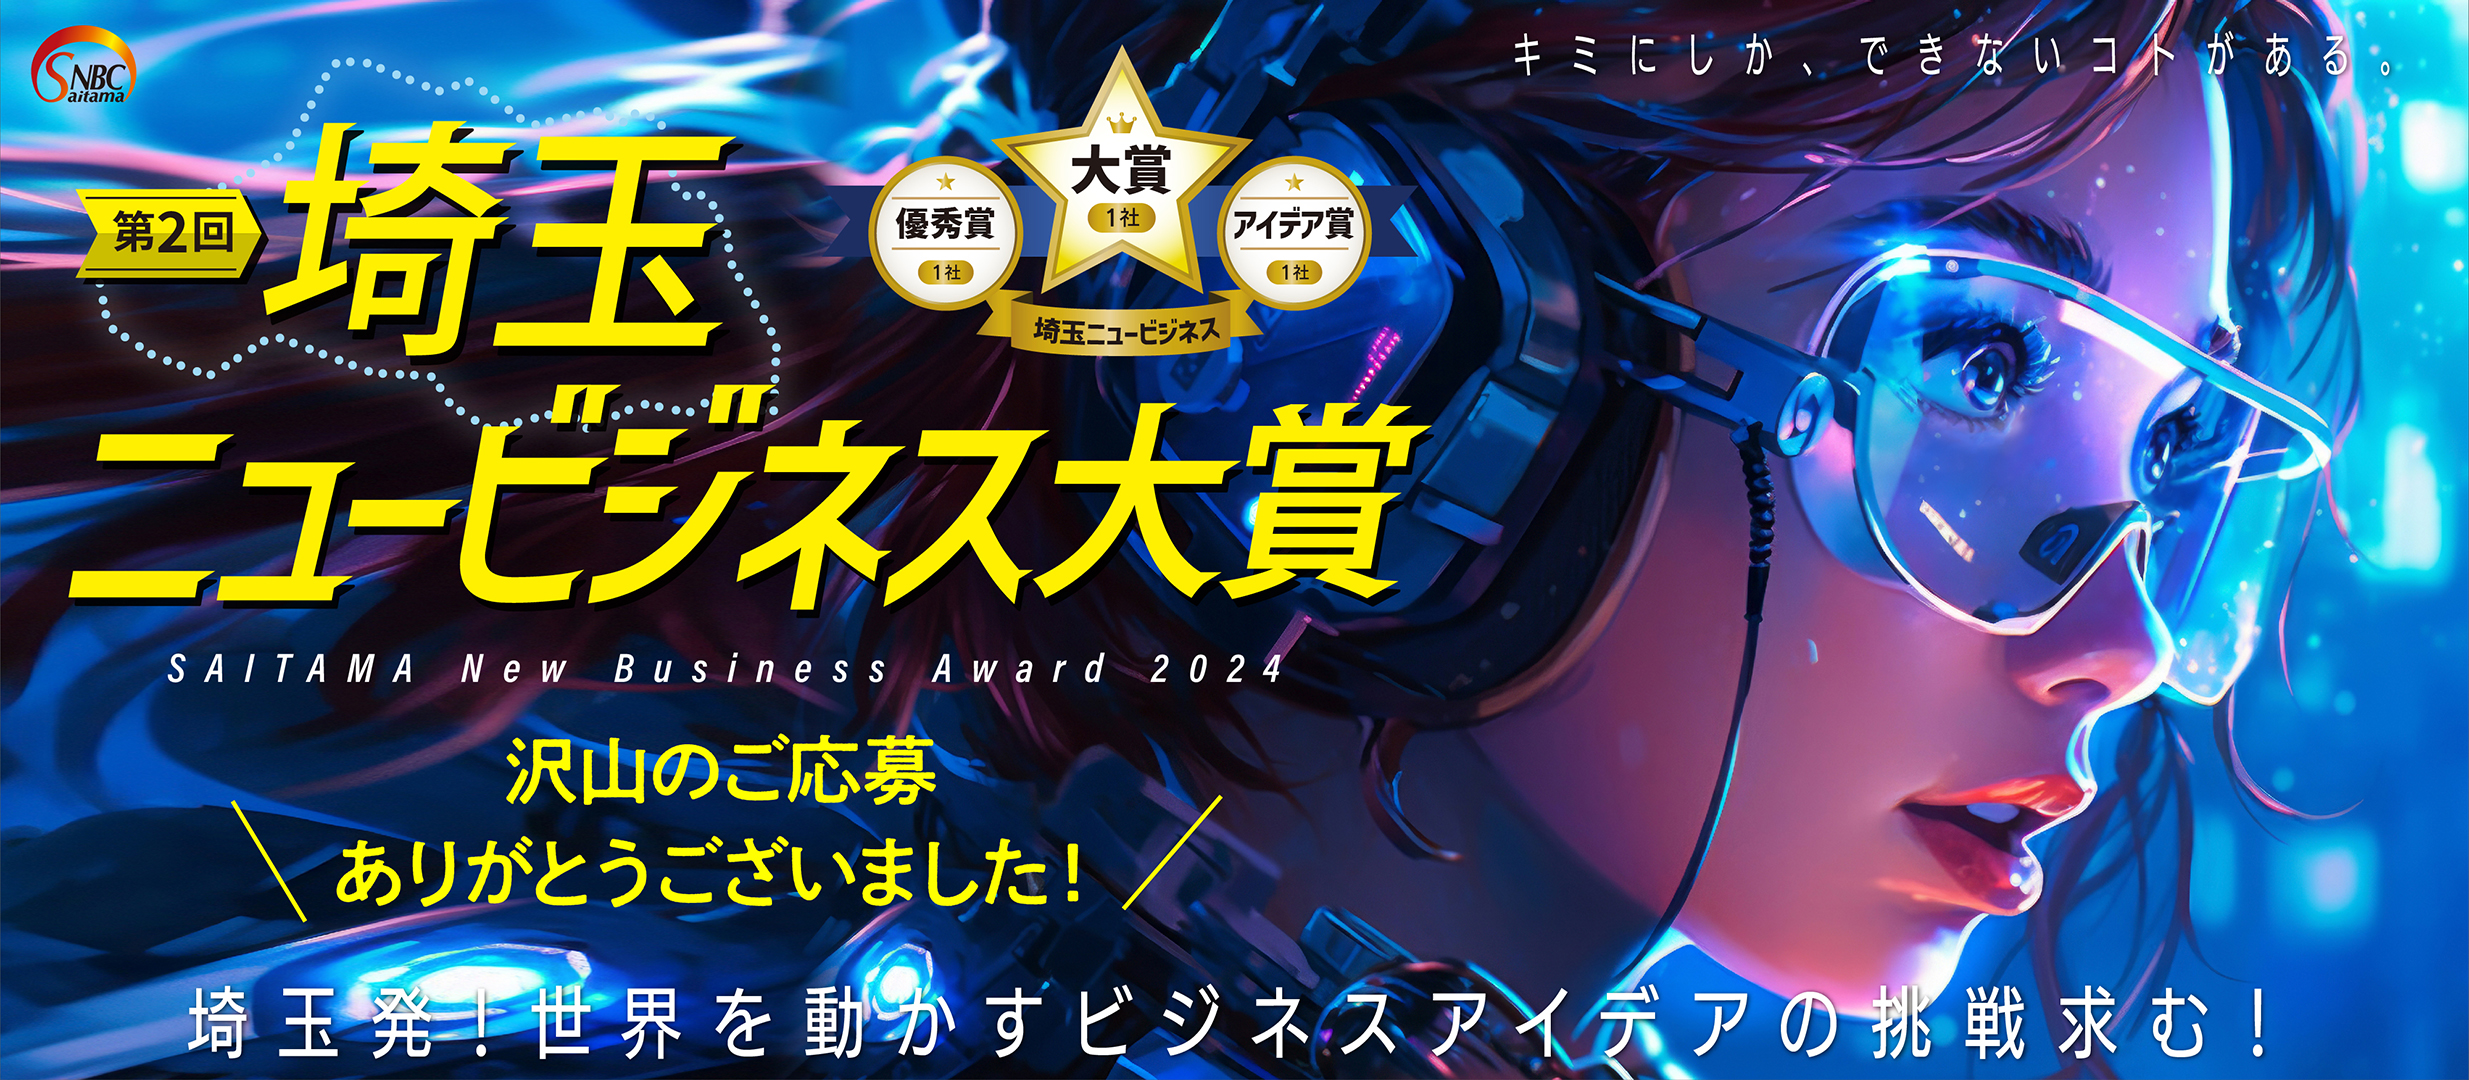 第二回 埼玉ニュービジネス大賞【SAITAMA New Busuness Award 2023】